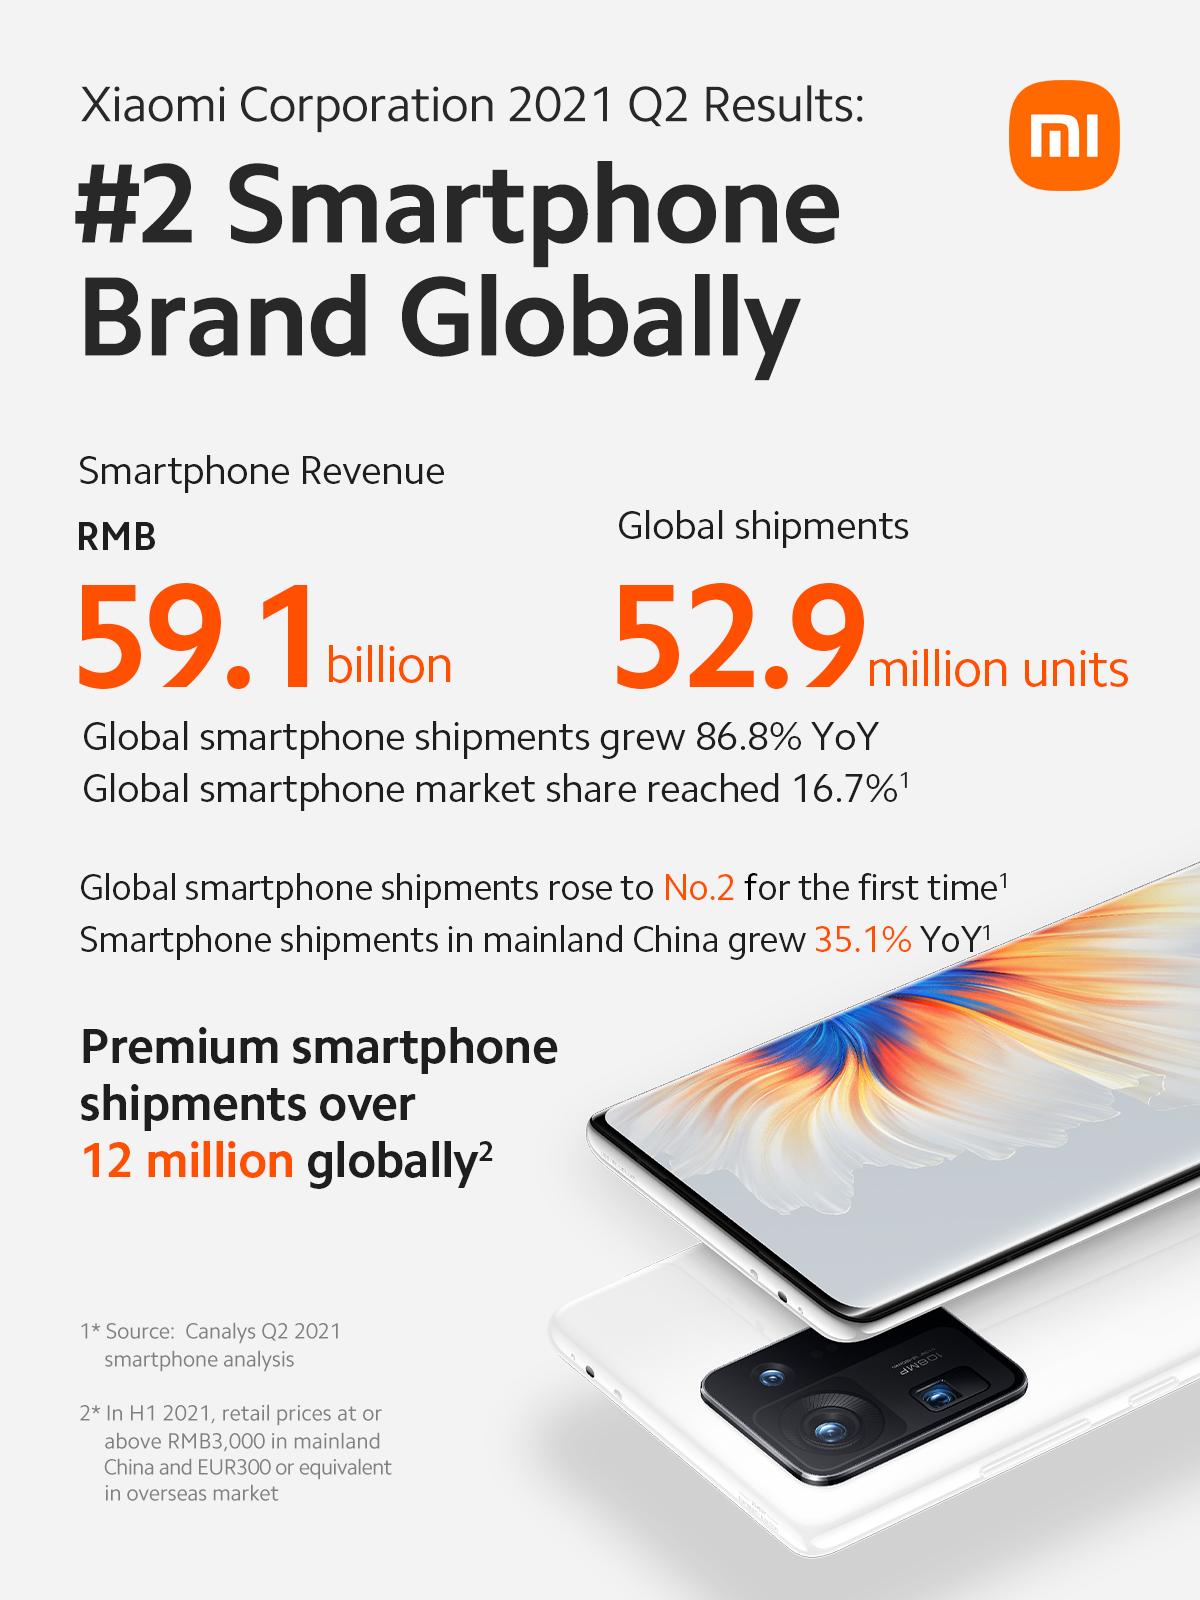 Xiaomi anuncia sólido crecimiento de ingresos y ganancias en el segundo trimestre de 2021